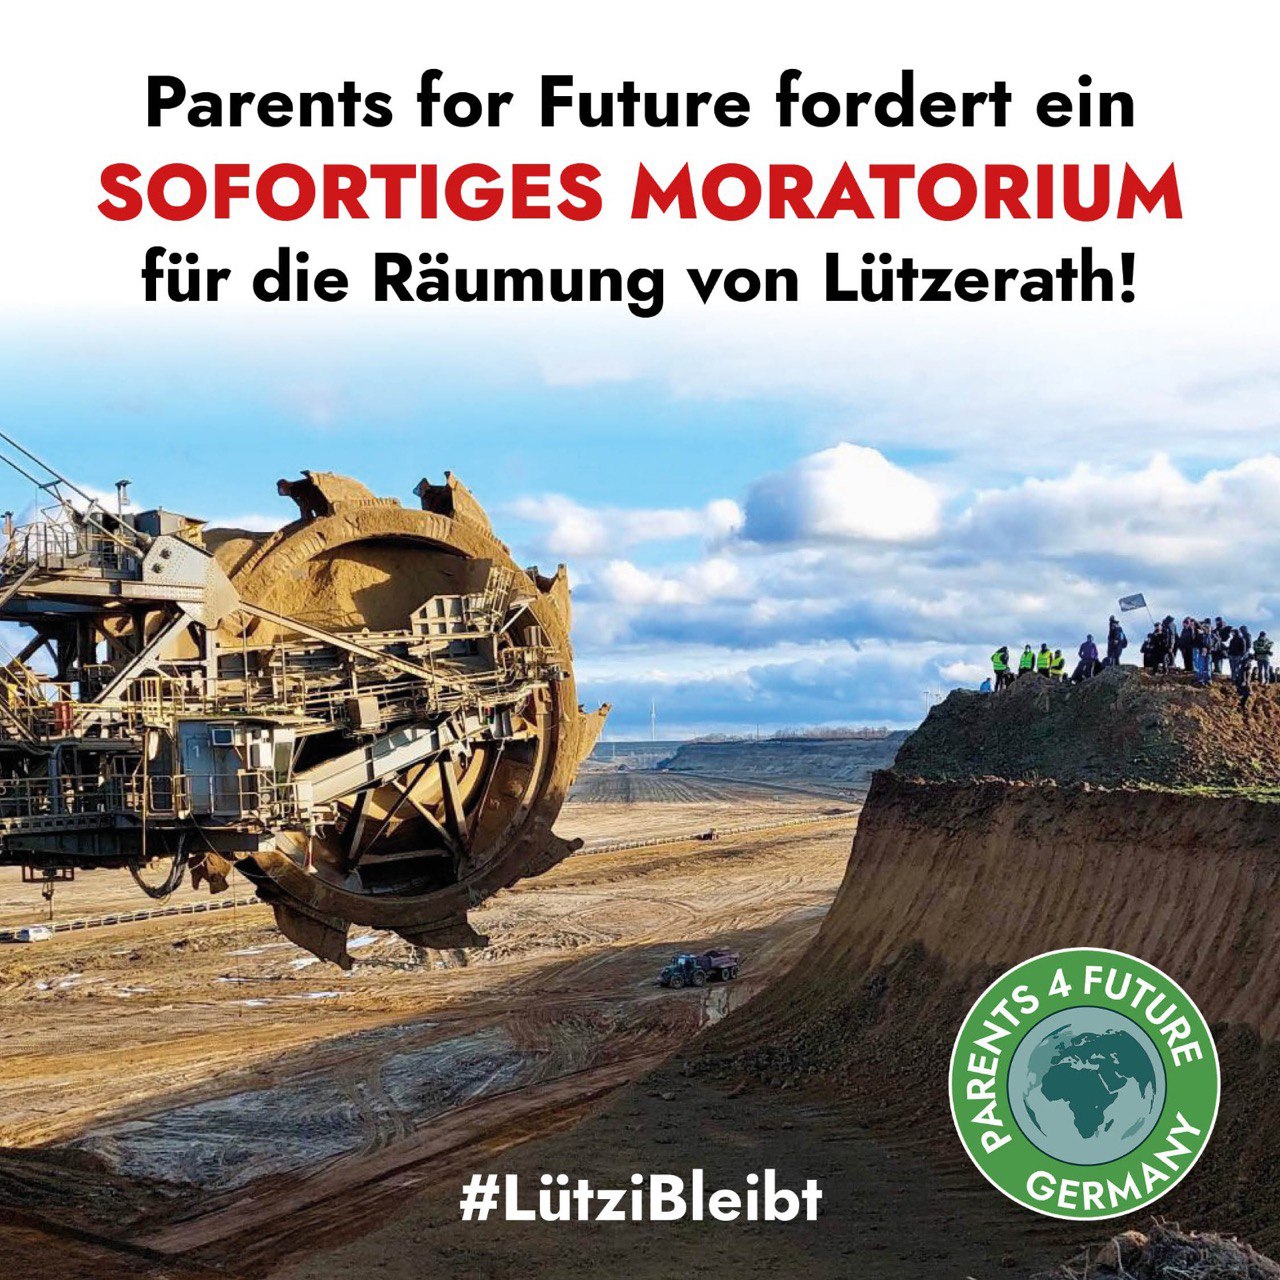 Moratorium für die Räumung von Lützerath jetzt!